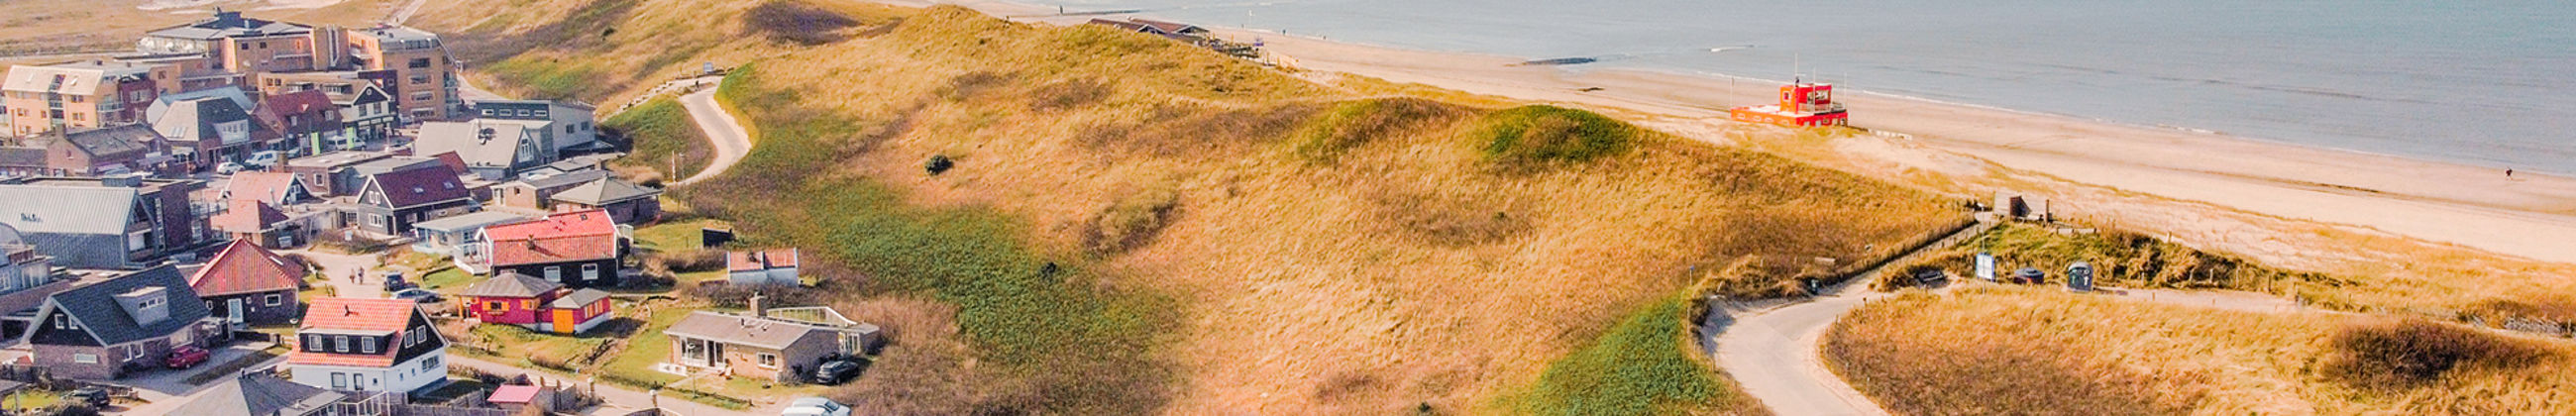 calantsoog drone duinen strand centrum